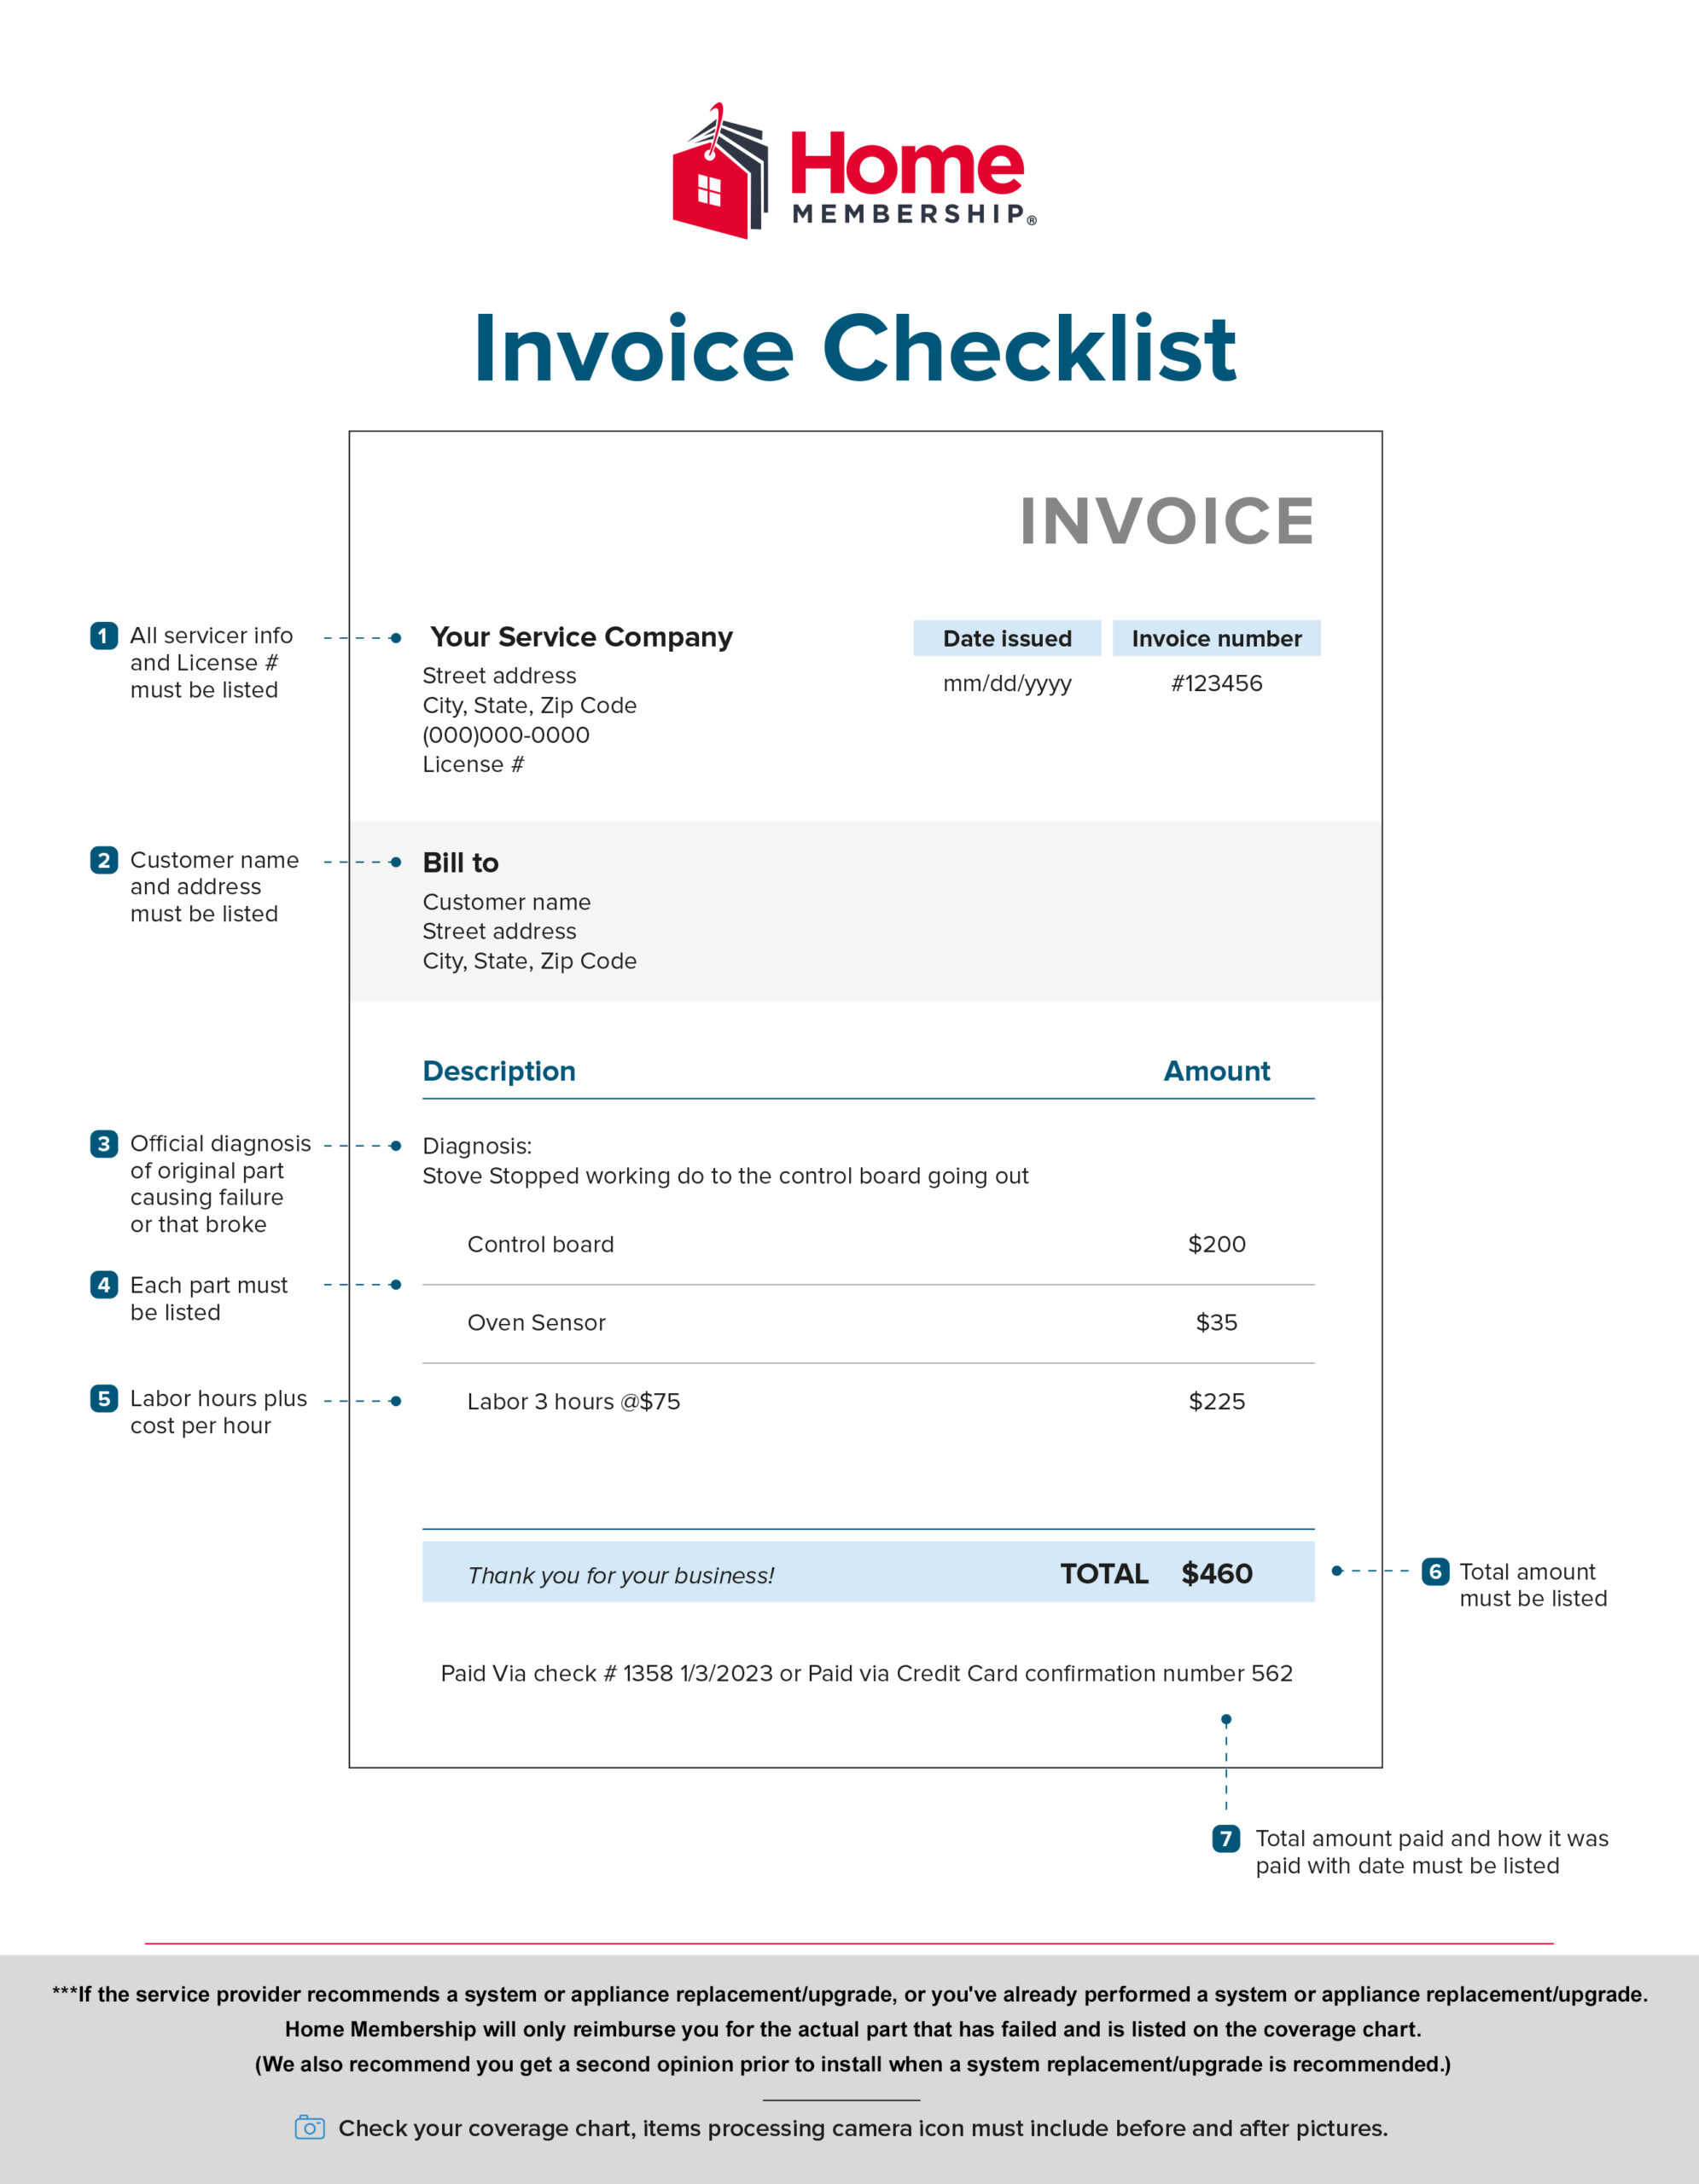 AOA-Invoice Checklist-v1